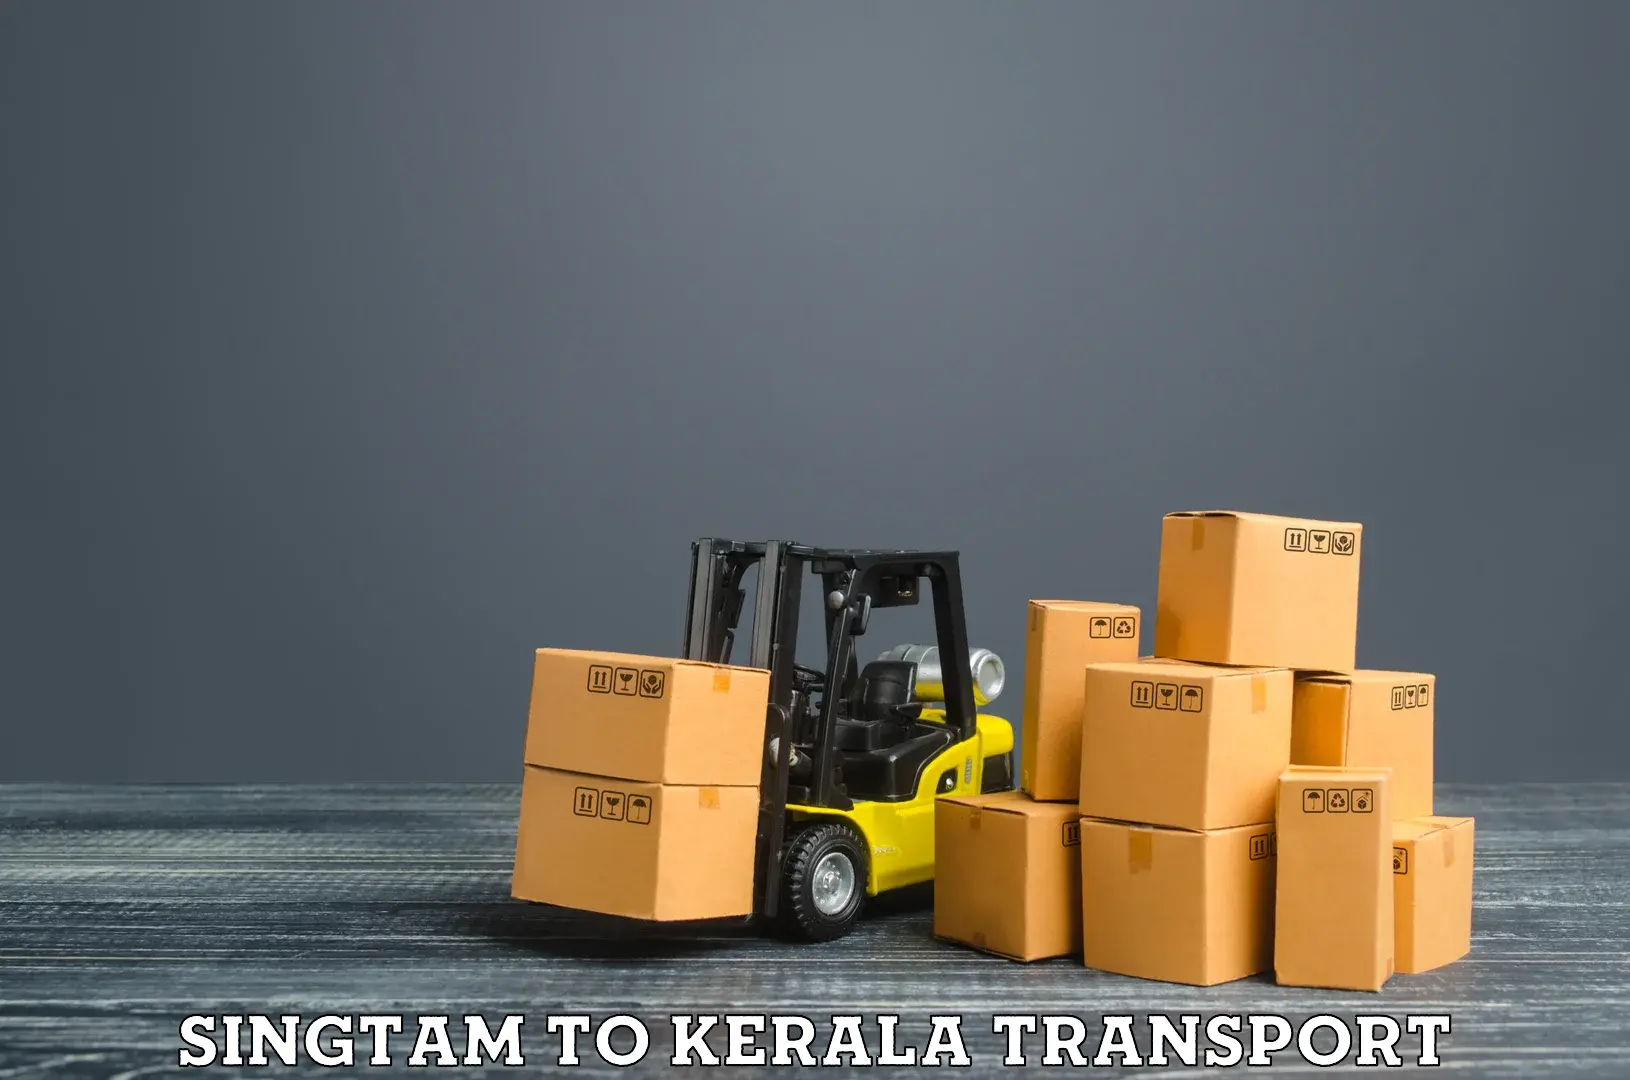 Cargo transport services Singtam to Munnar